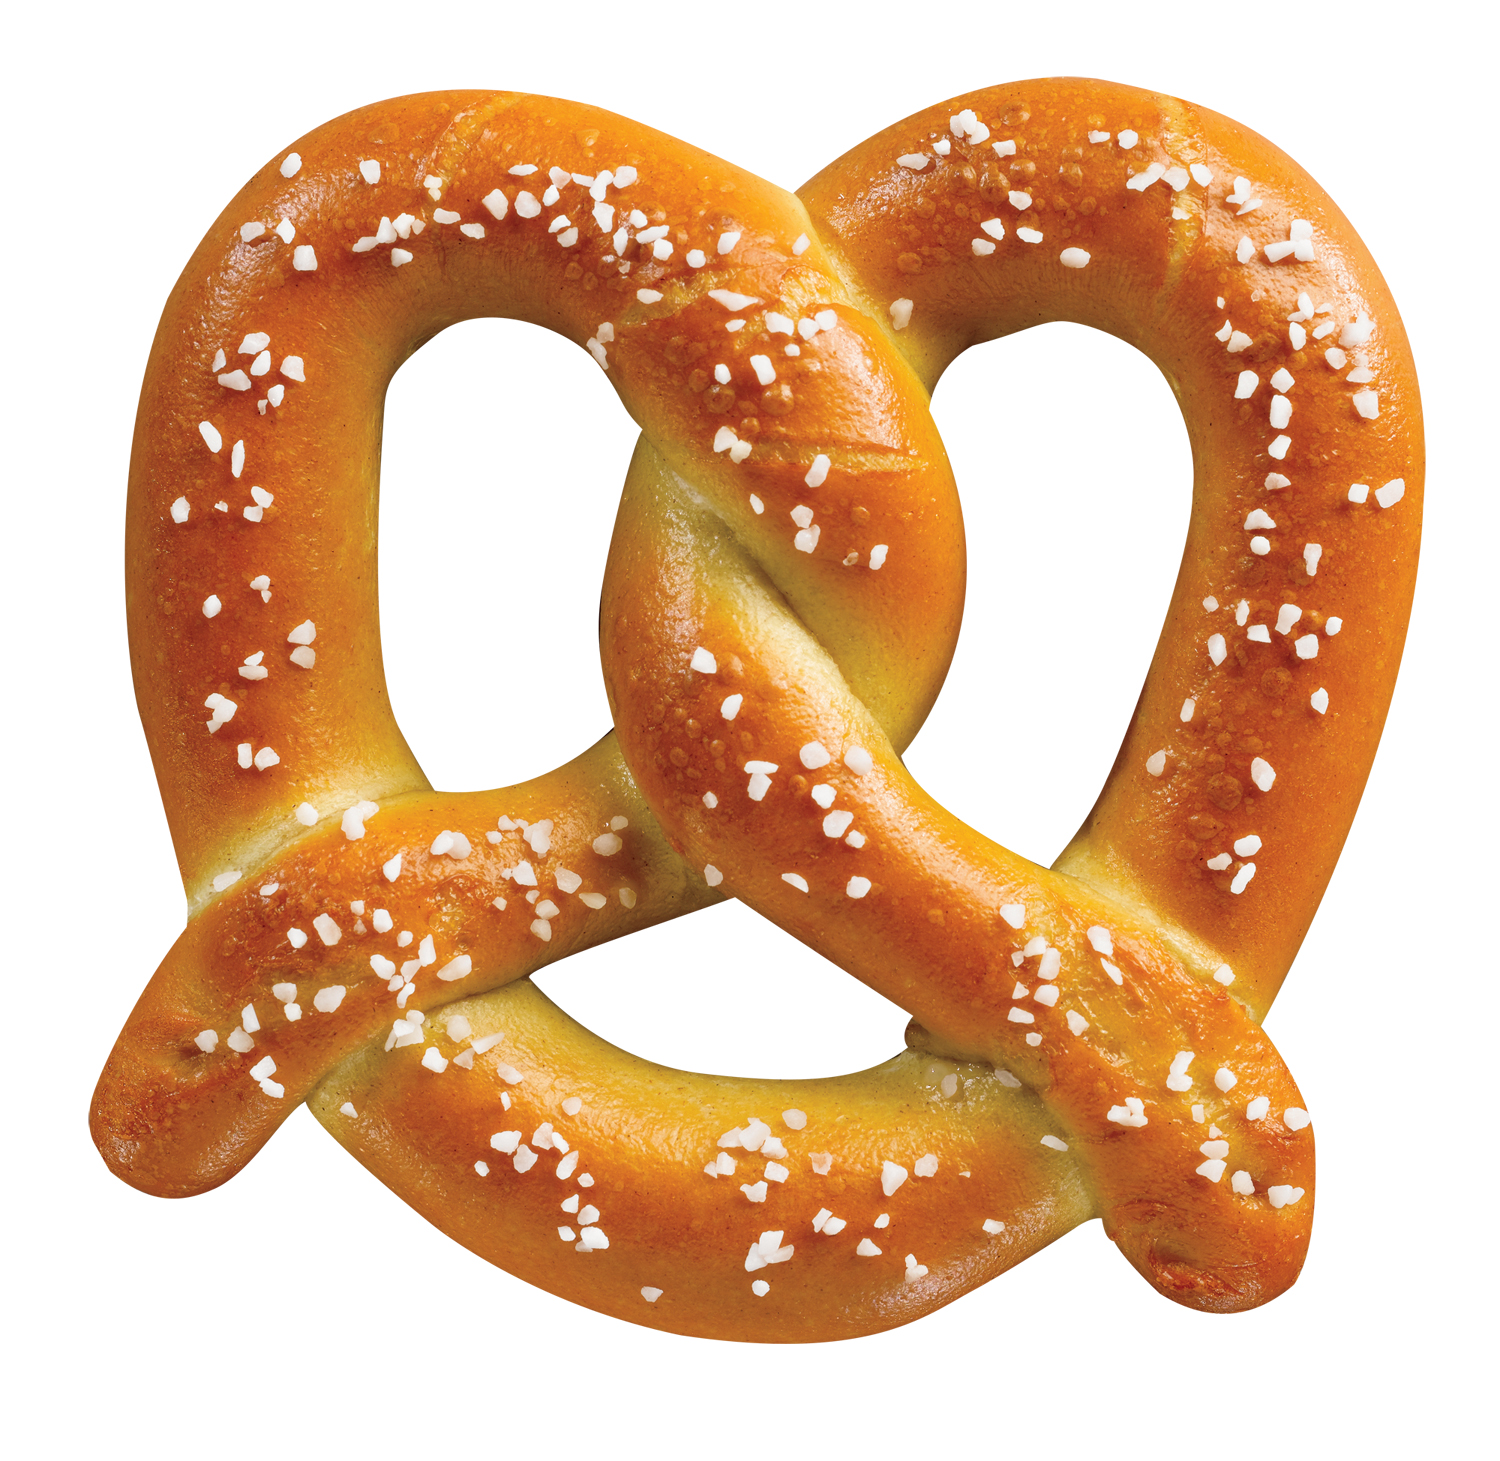 A pretzel